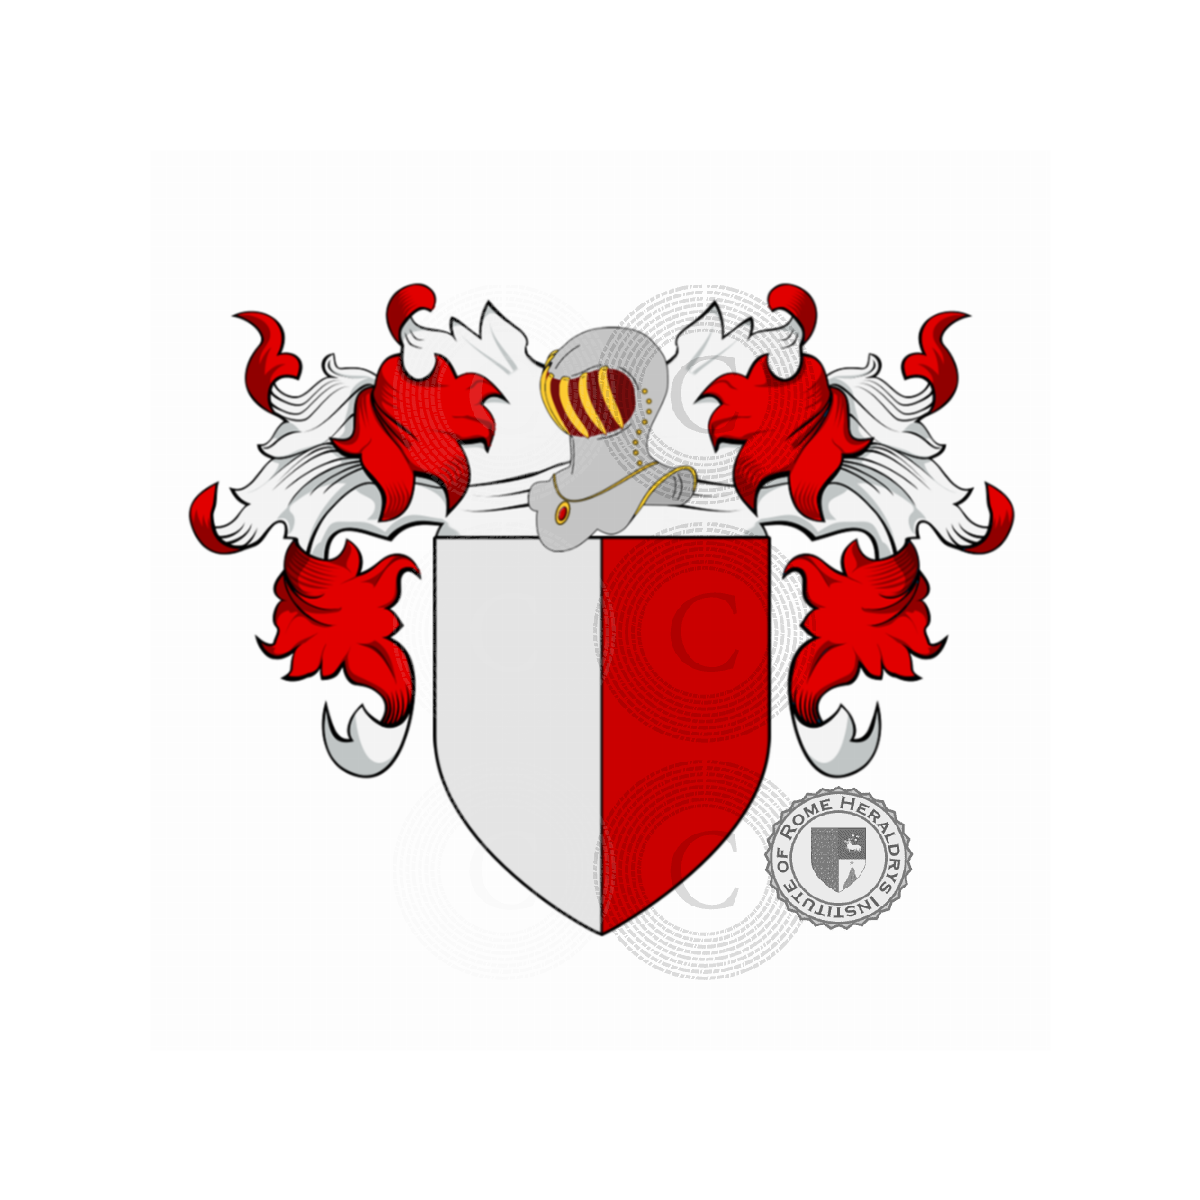 Wappen der FamilieManetti, Gori Manetti,Manetta,Manetti a Pontormo,Manetti delle Stelle,Manetto